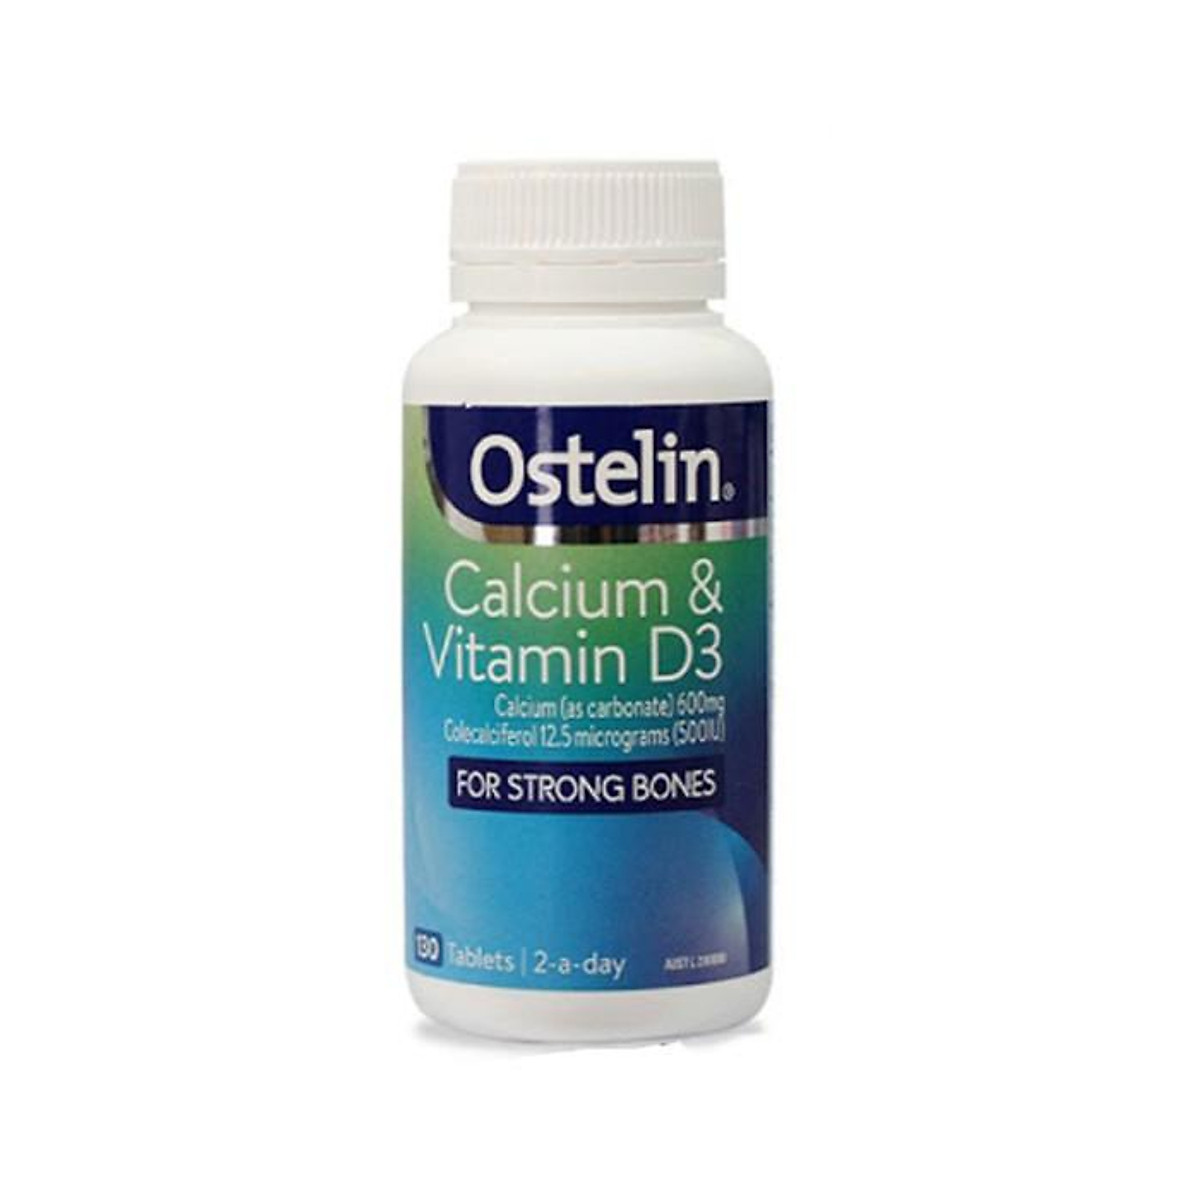 Canxi & vitamin D Ostelin Úc cho bà bầu (130 viên)